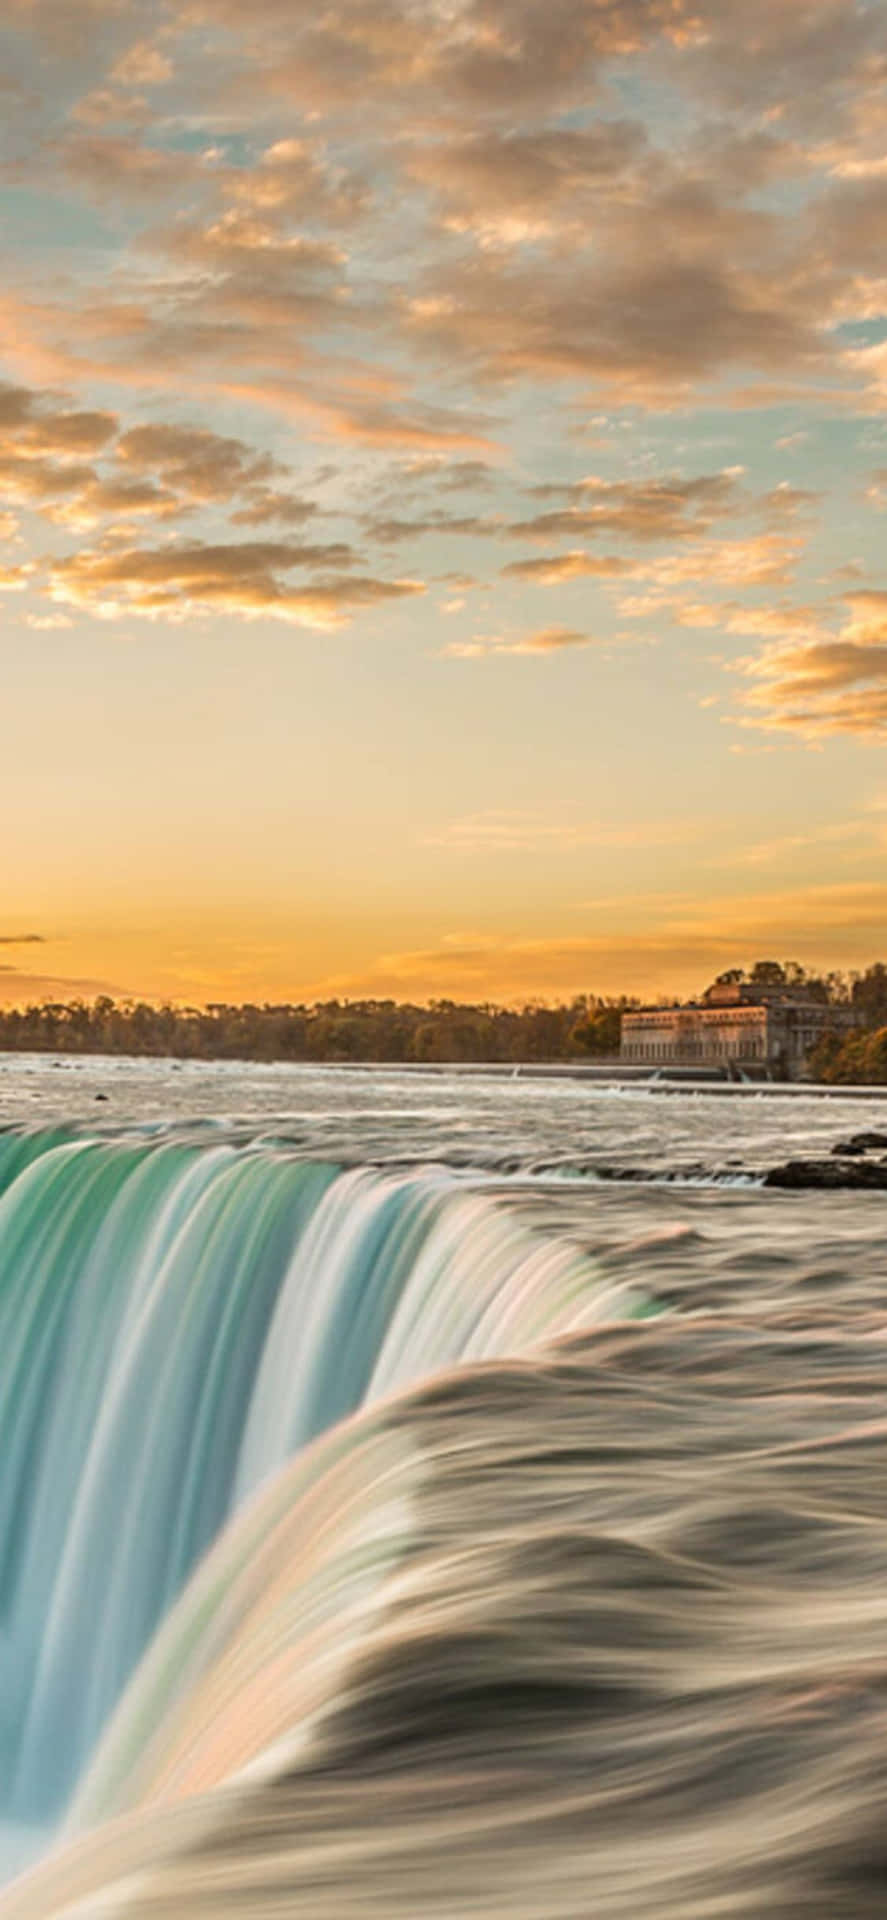 Iphonex Bakgrund Med Niagarafallen Vid Solnedgången.